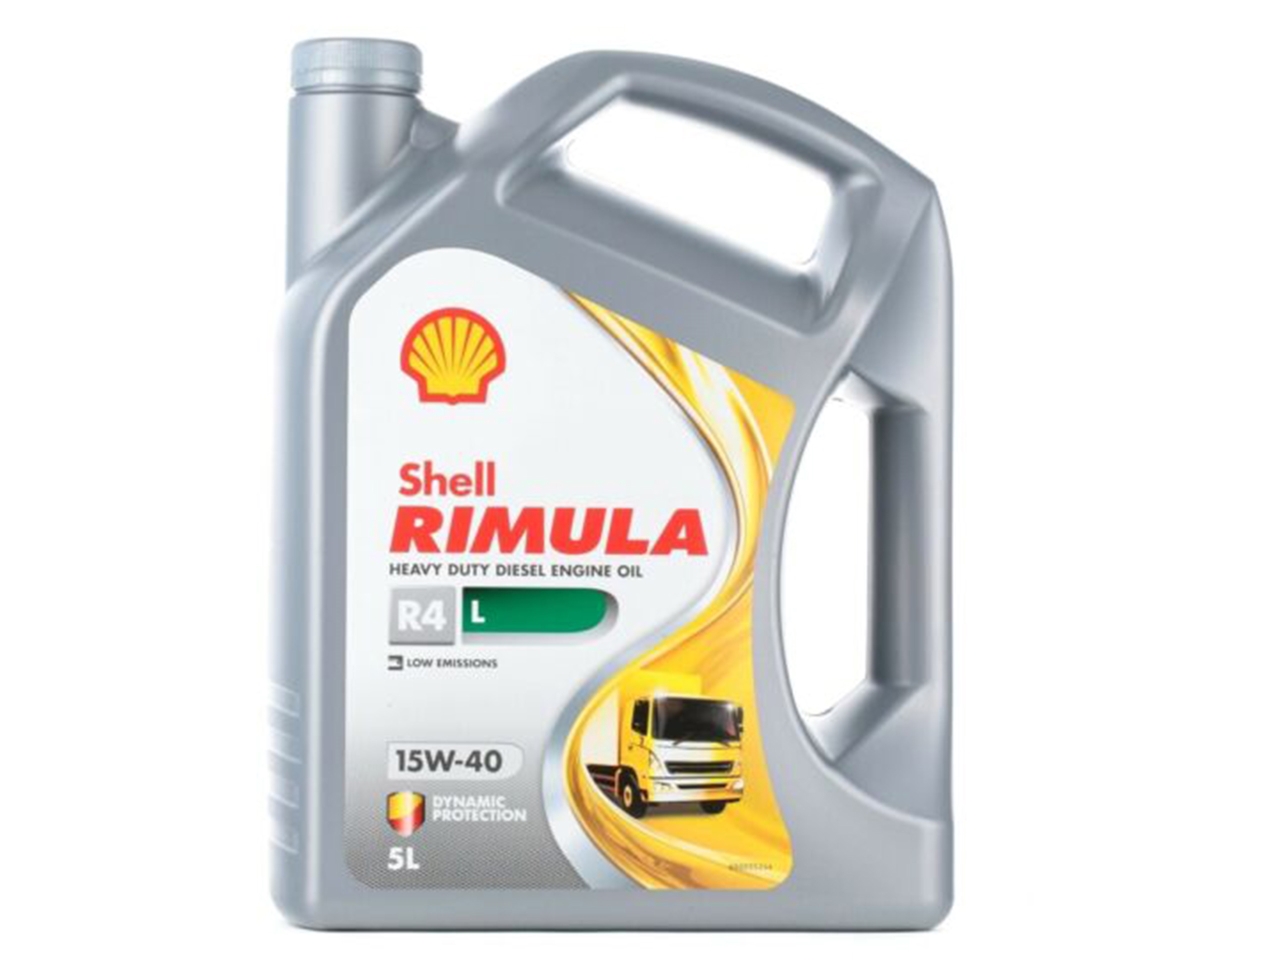 Shell Rimula R4 L 15W-40 CK4 engine oil 5L